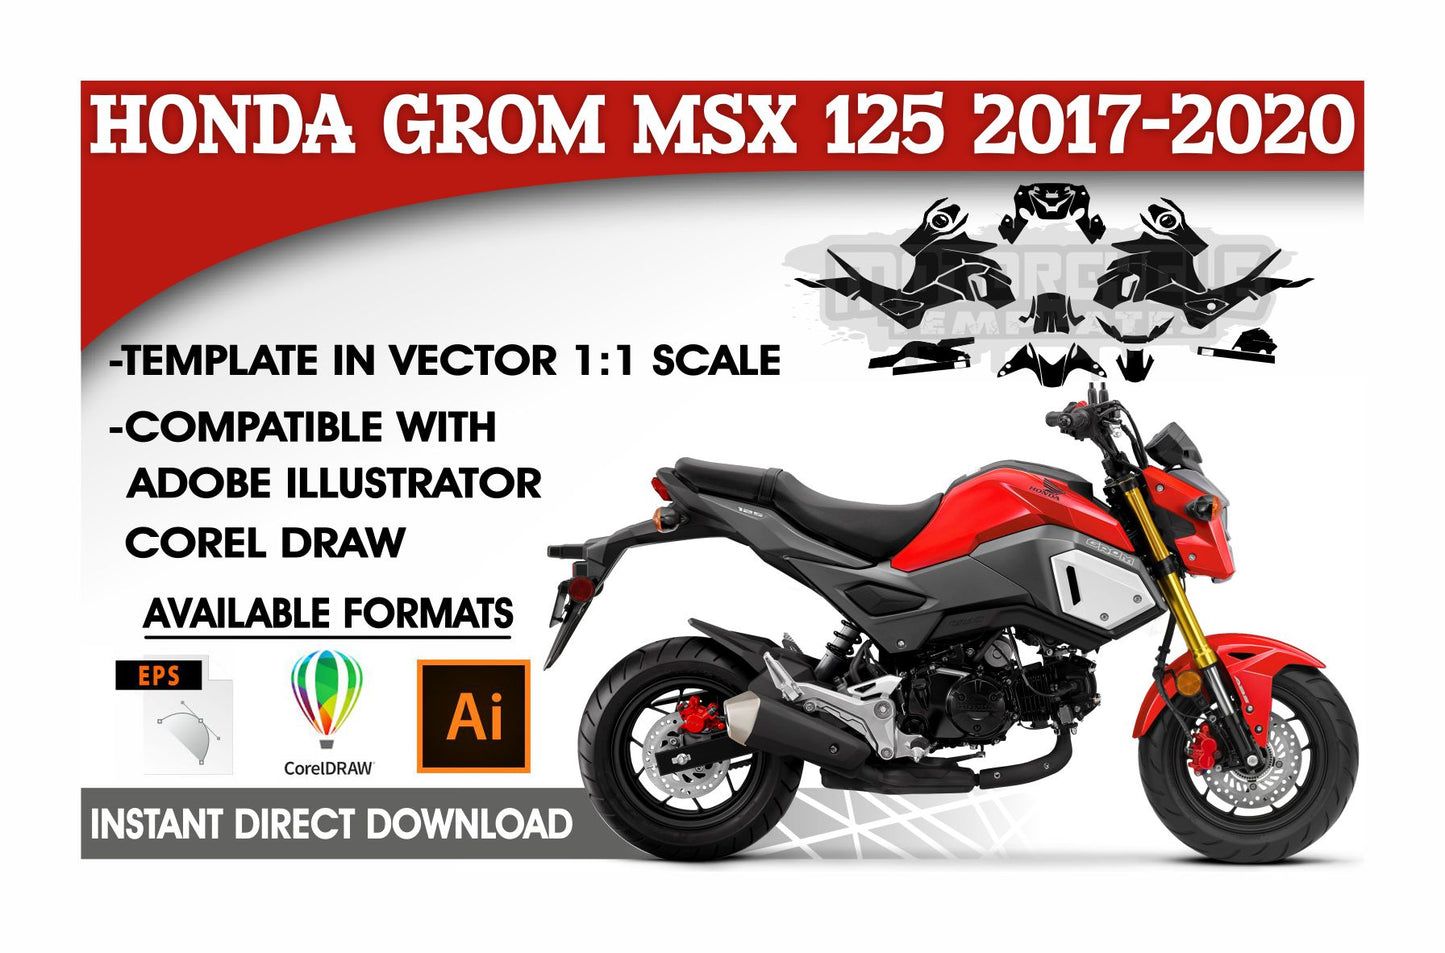 HONDA GROM MSX 125 2017-2020